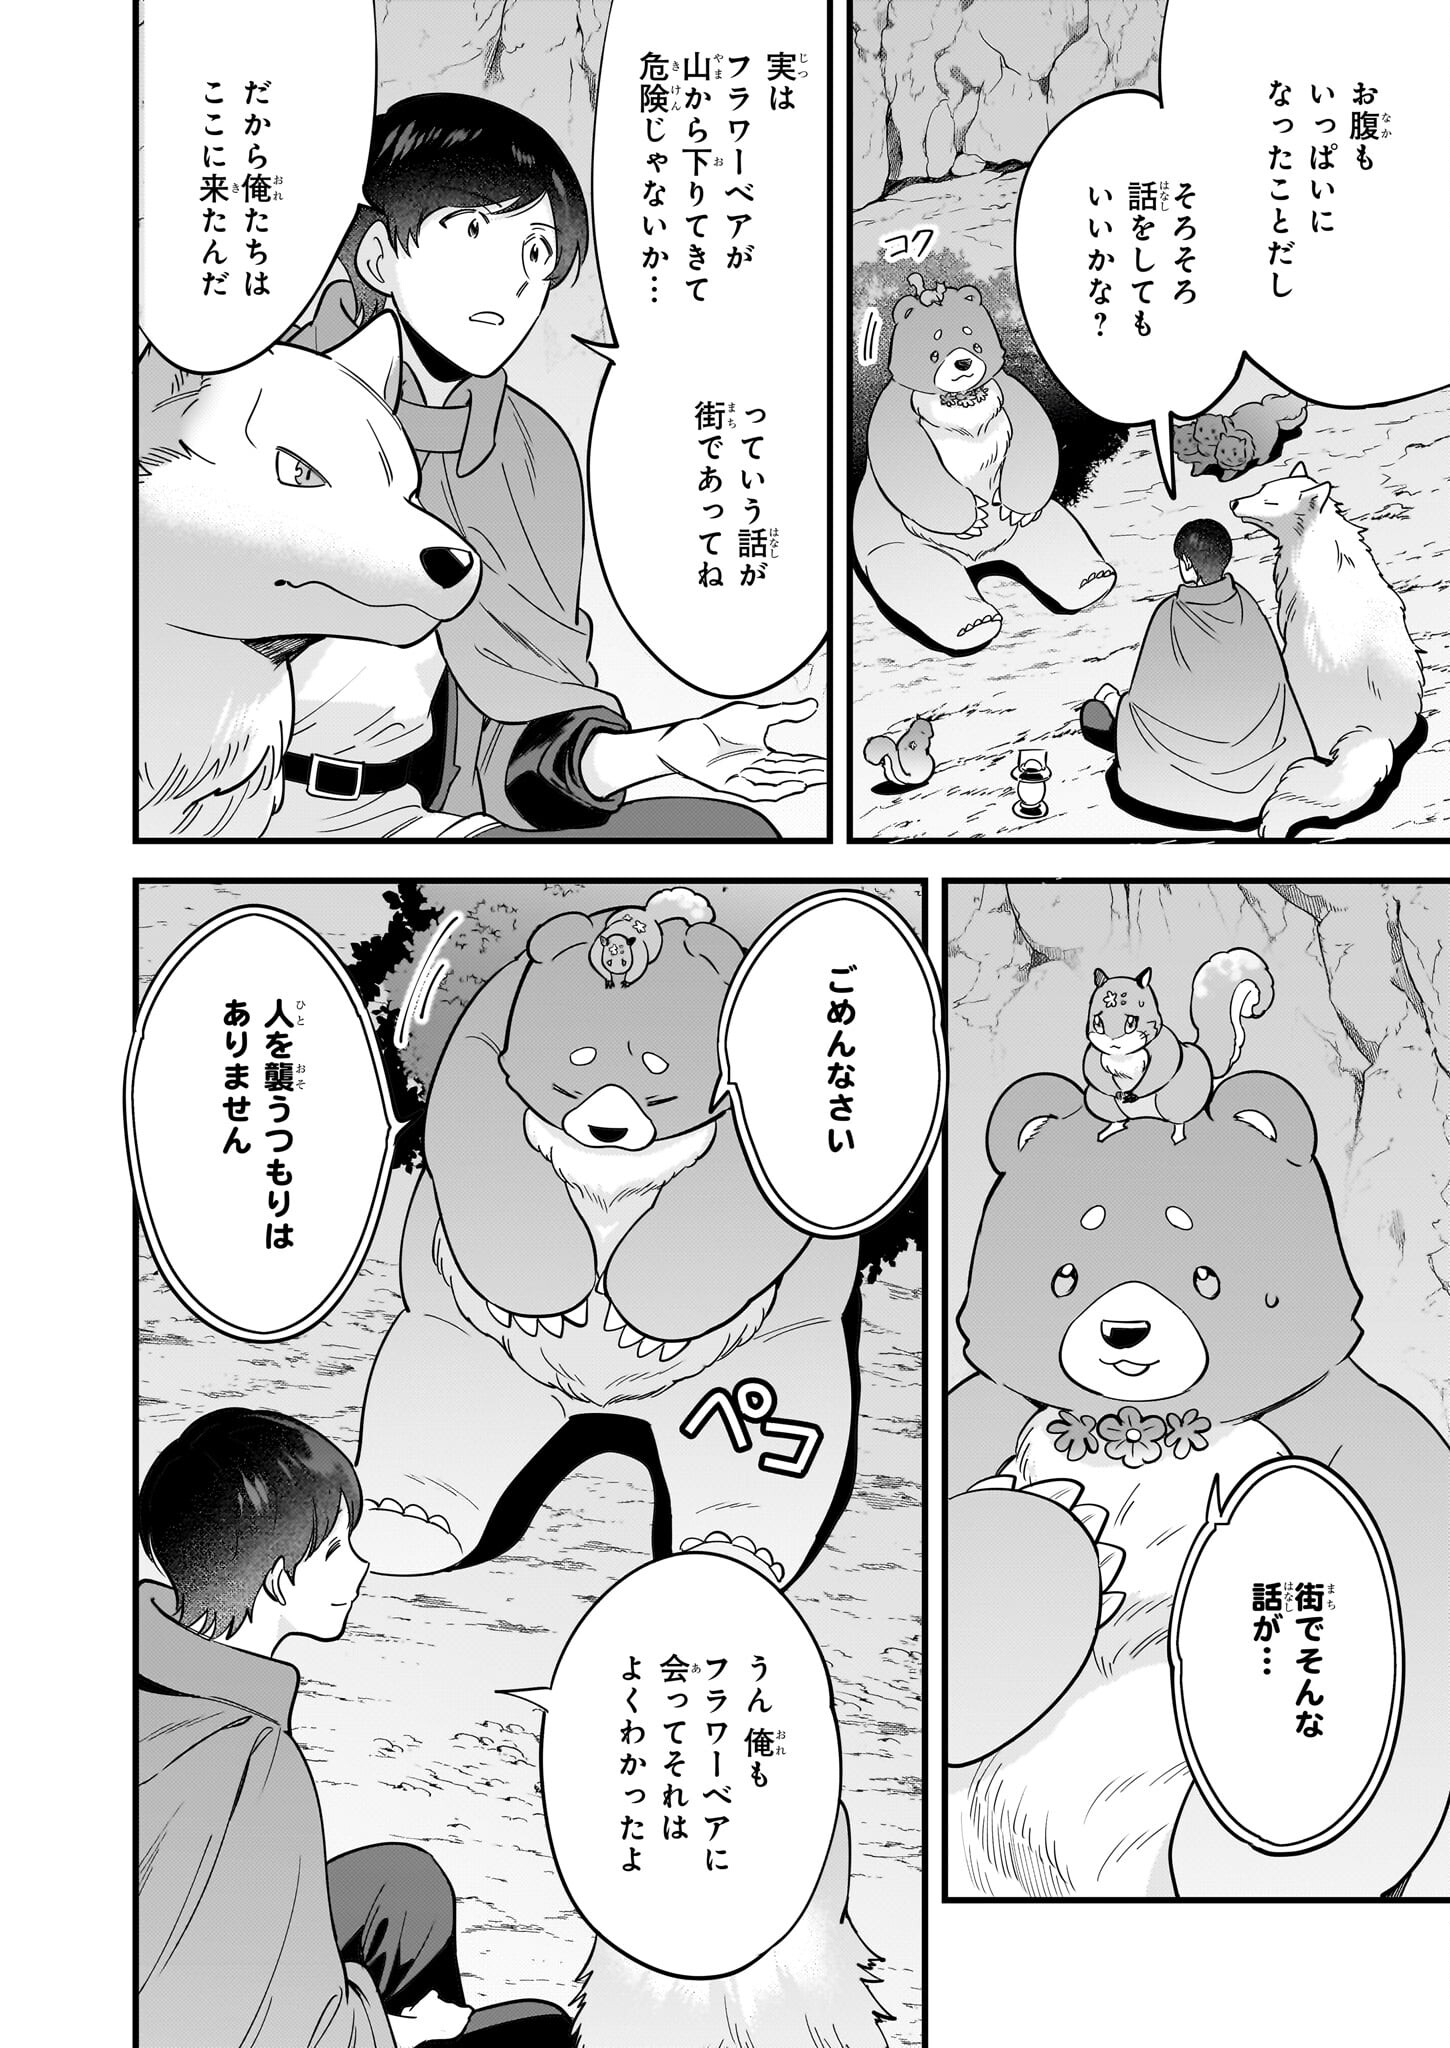 Isekai Mofumofu Cafe - Chapter 29 - Page 2